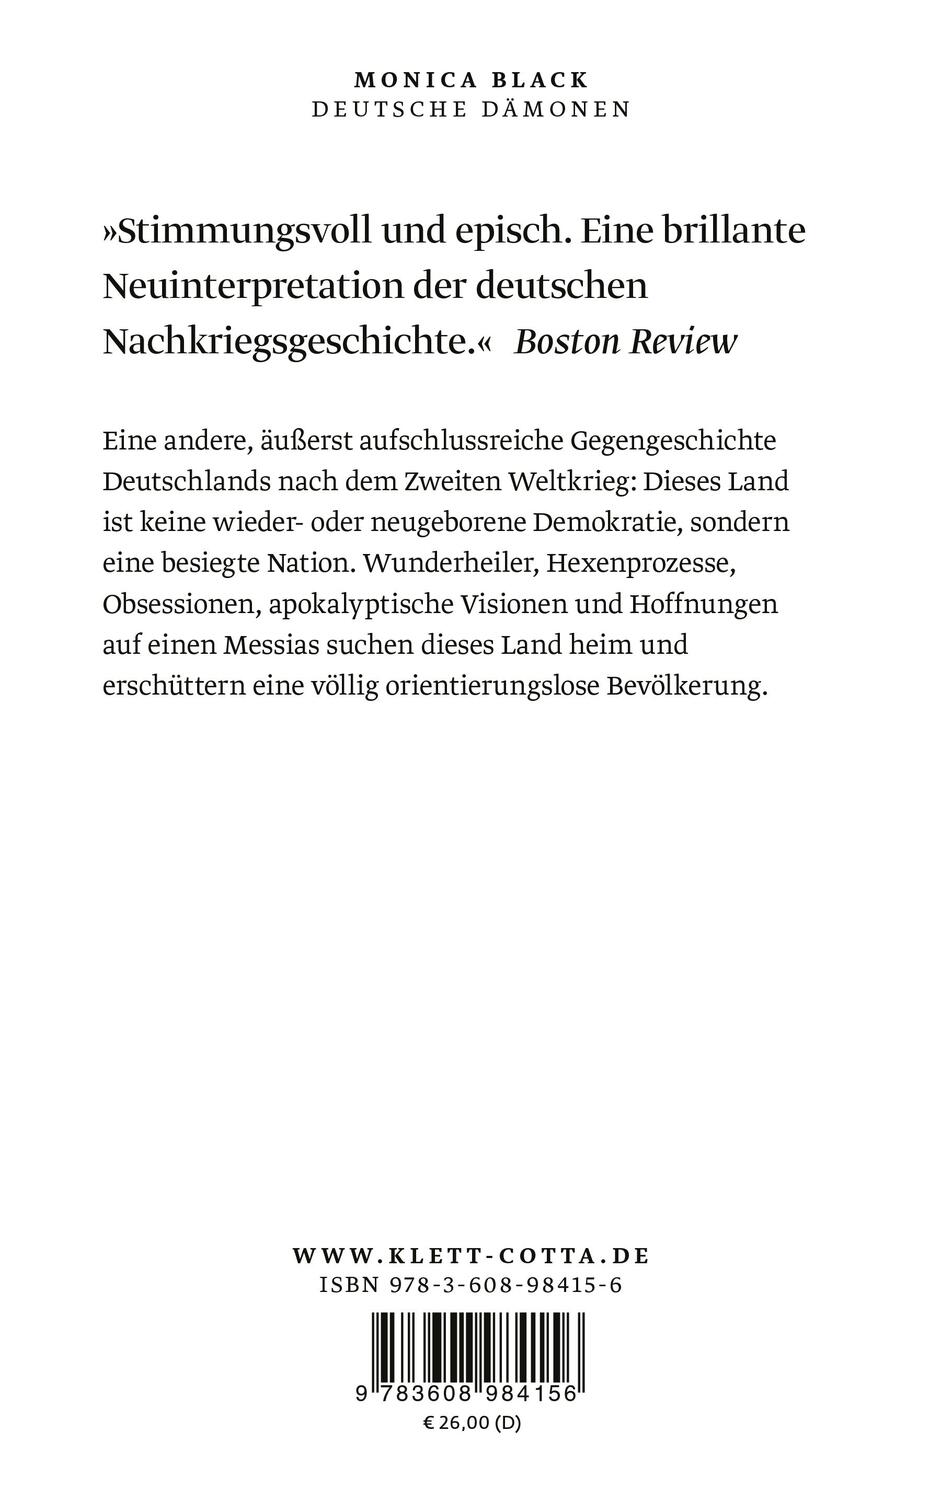 Rückseite: 9783608984156 | Deutsche Dämonen | Monica Black | Buch | gebunden mit Schutzumschlag